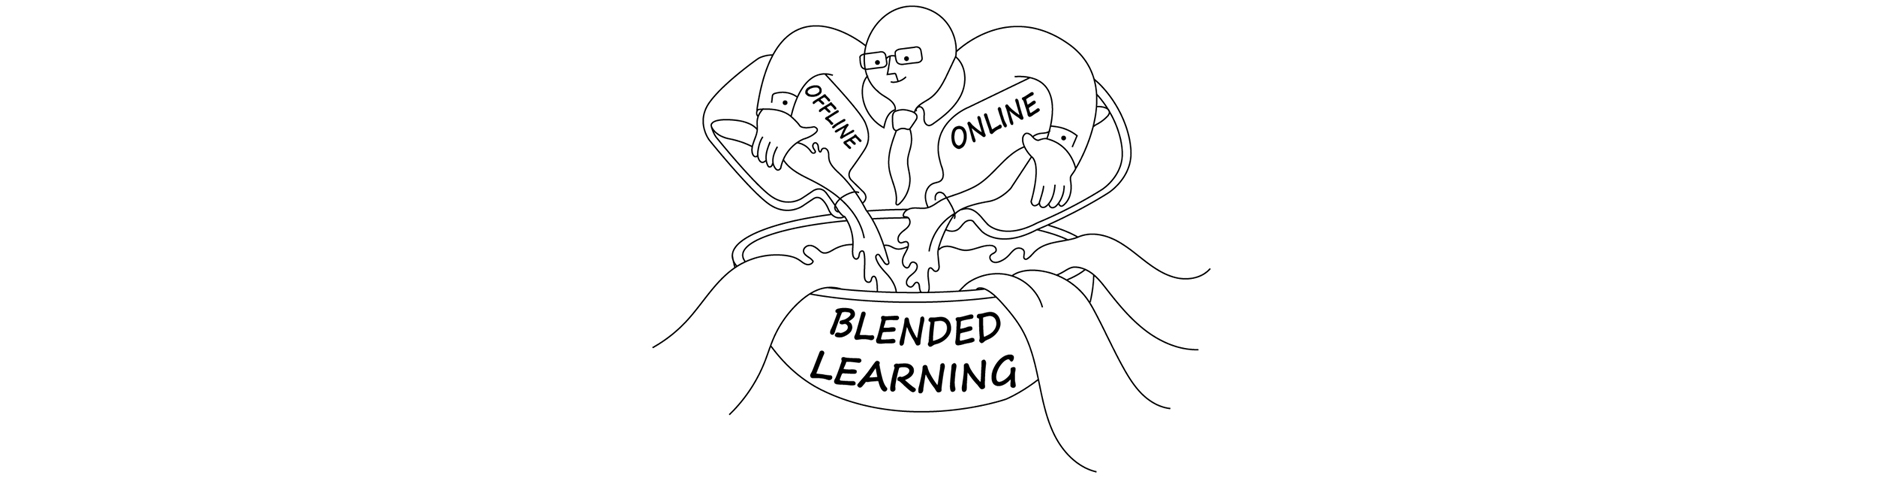 online blended learning.jpg